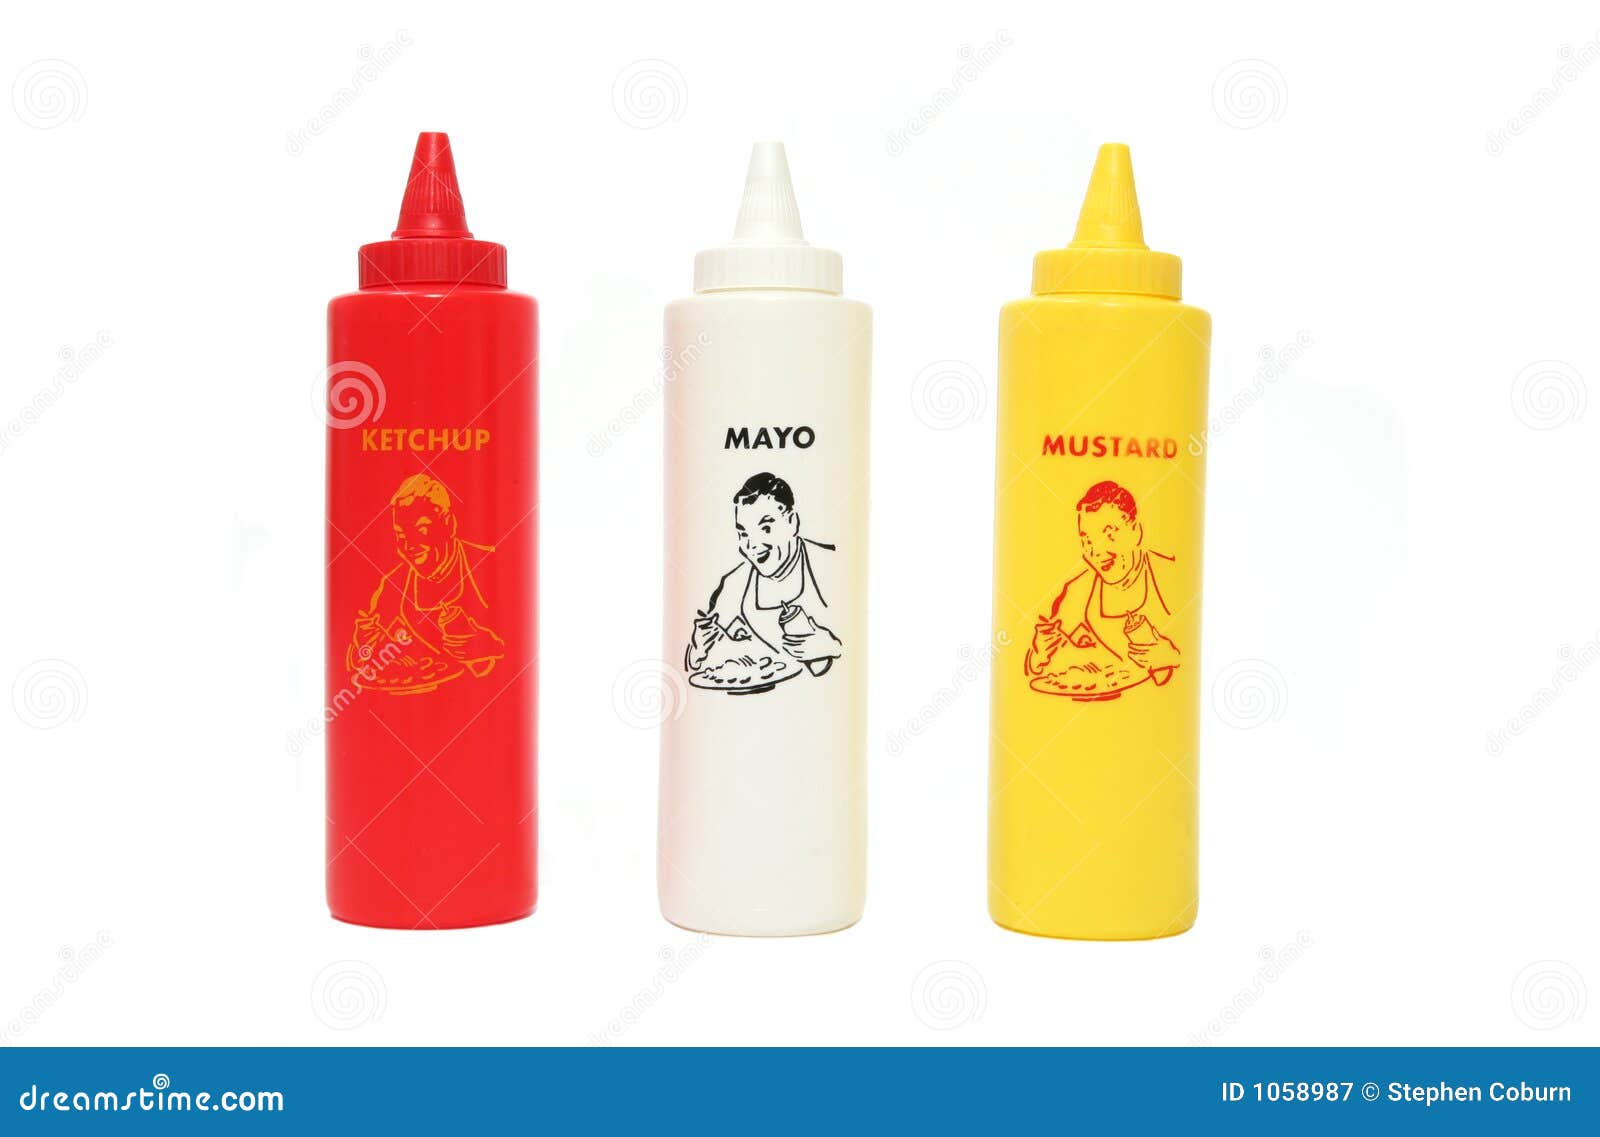 Ketchup, Mayo and Mustard stock image. 